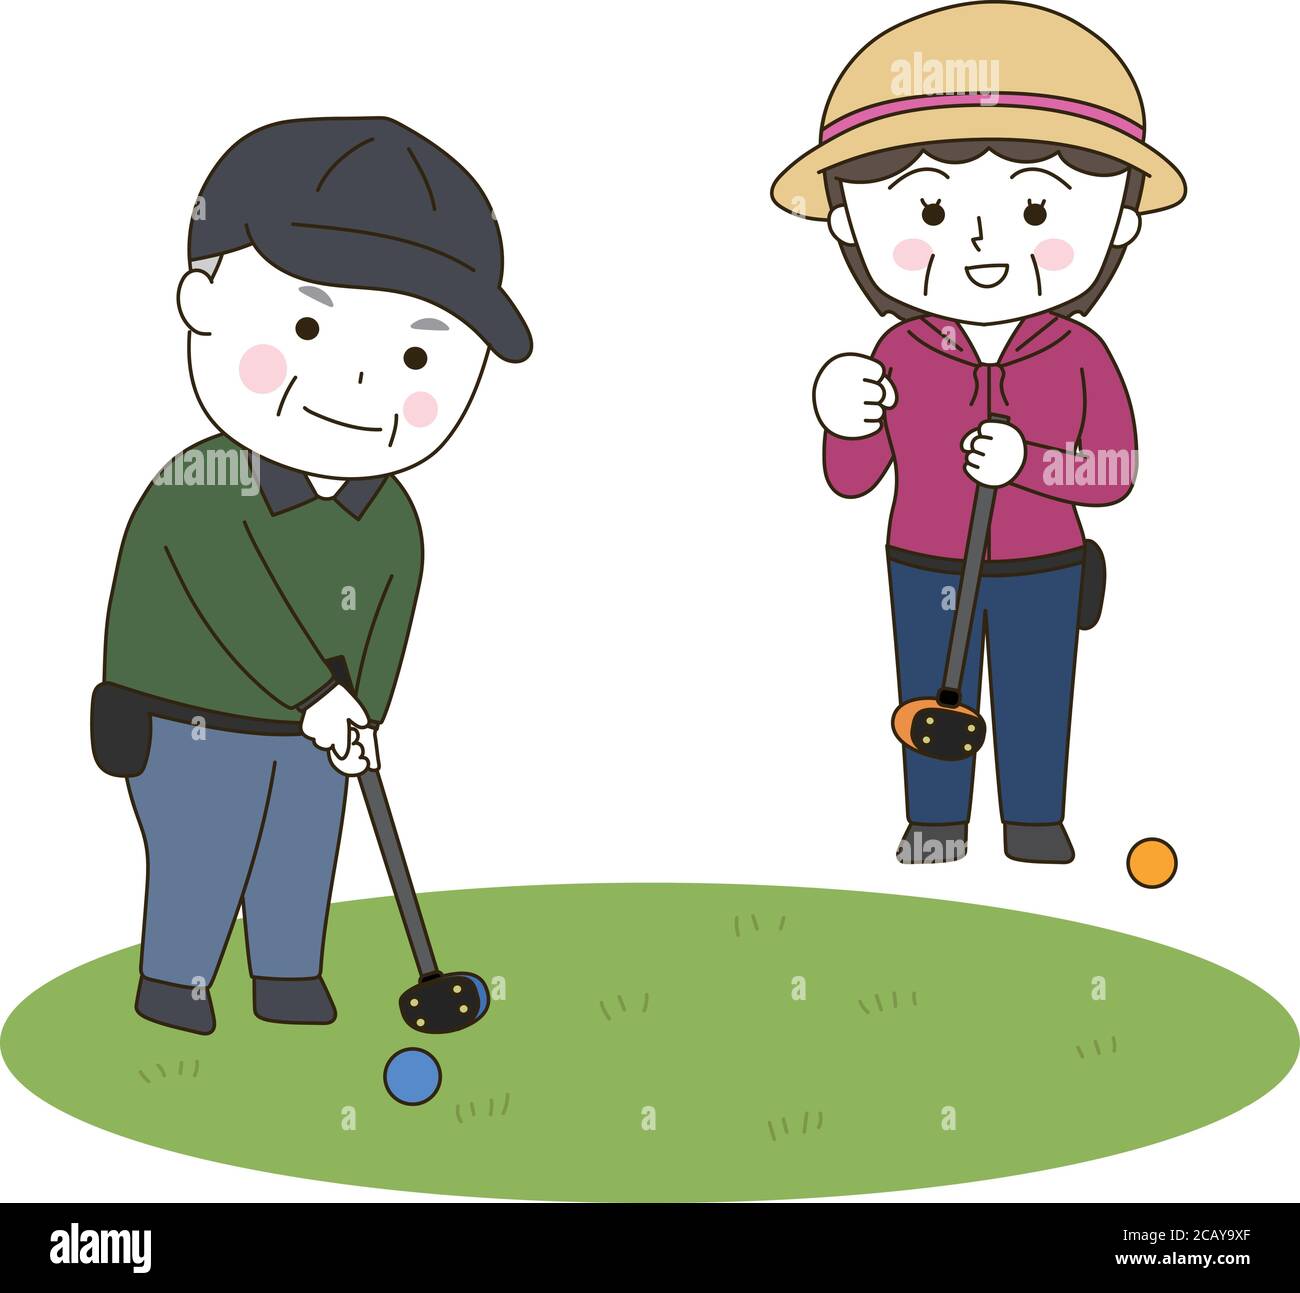 Ältere Männer und Frauen spielen im Park Golf. Vektorgrafik isoliert auf weißem Hintergrund. Stock Vektor